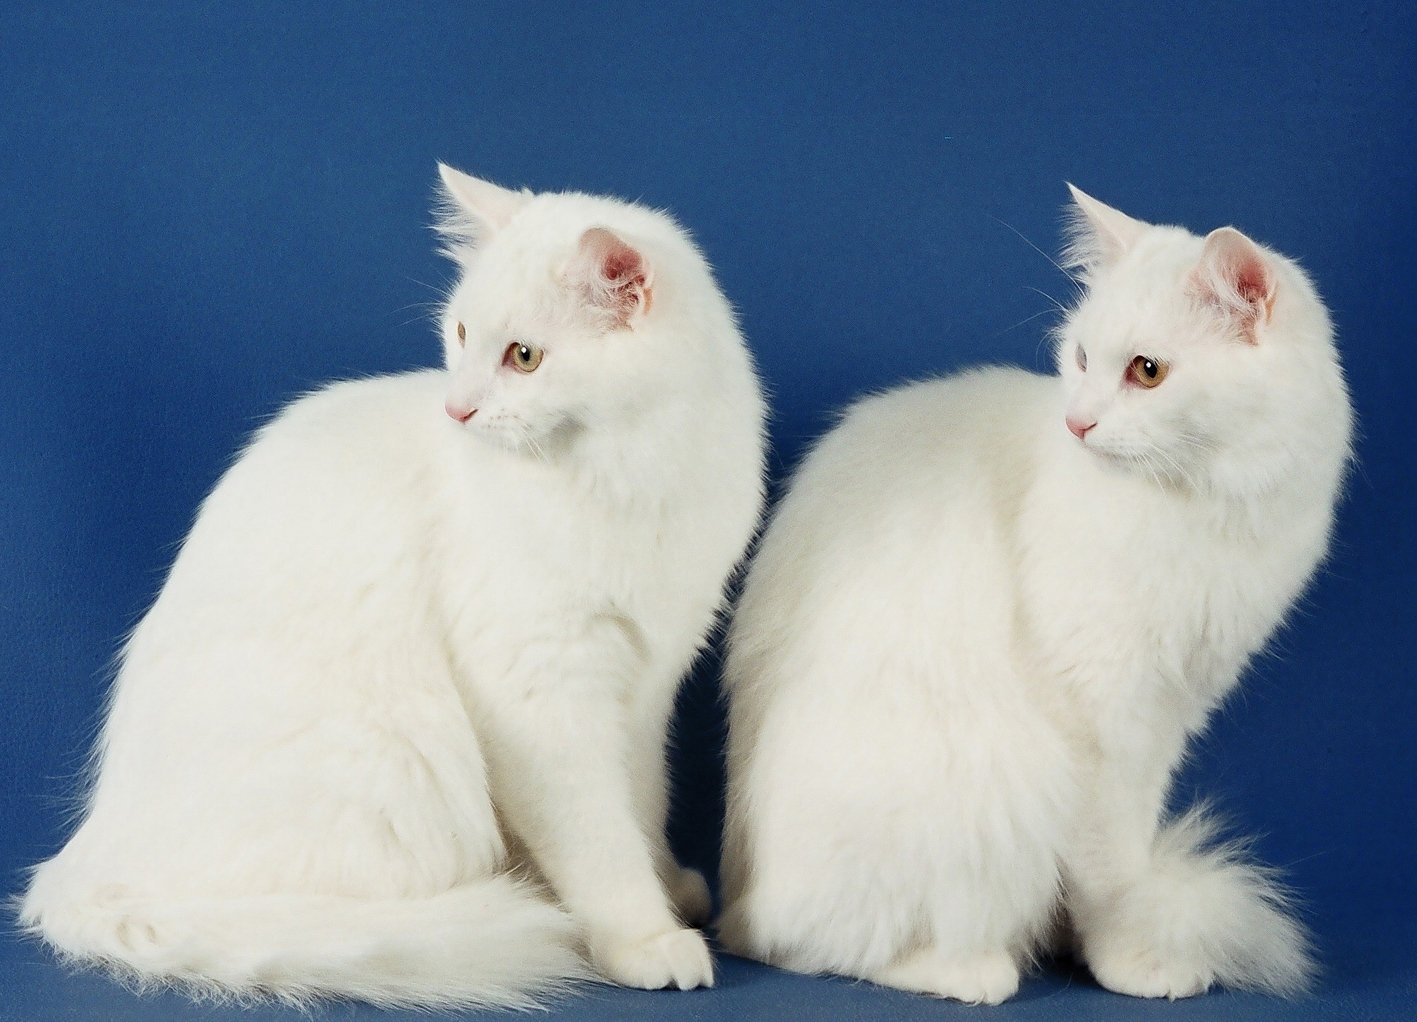 Турецкая ангора (кошка): описание породы и характера